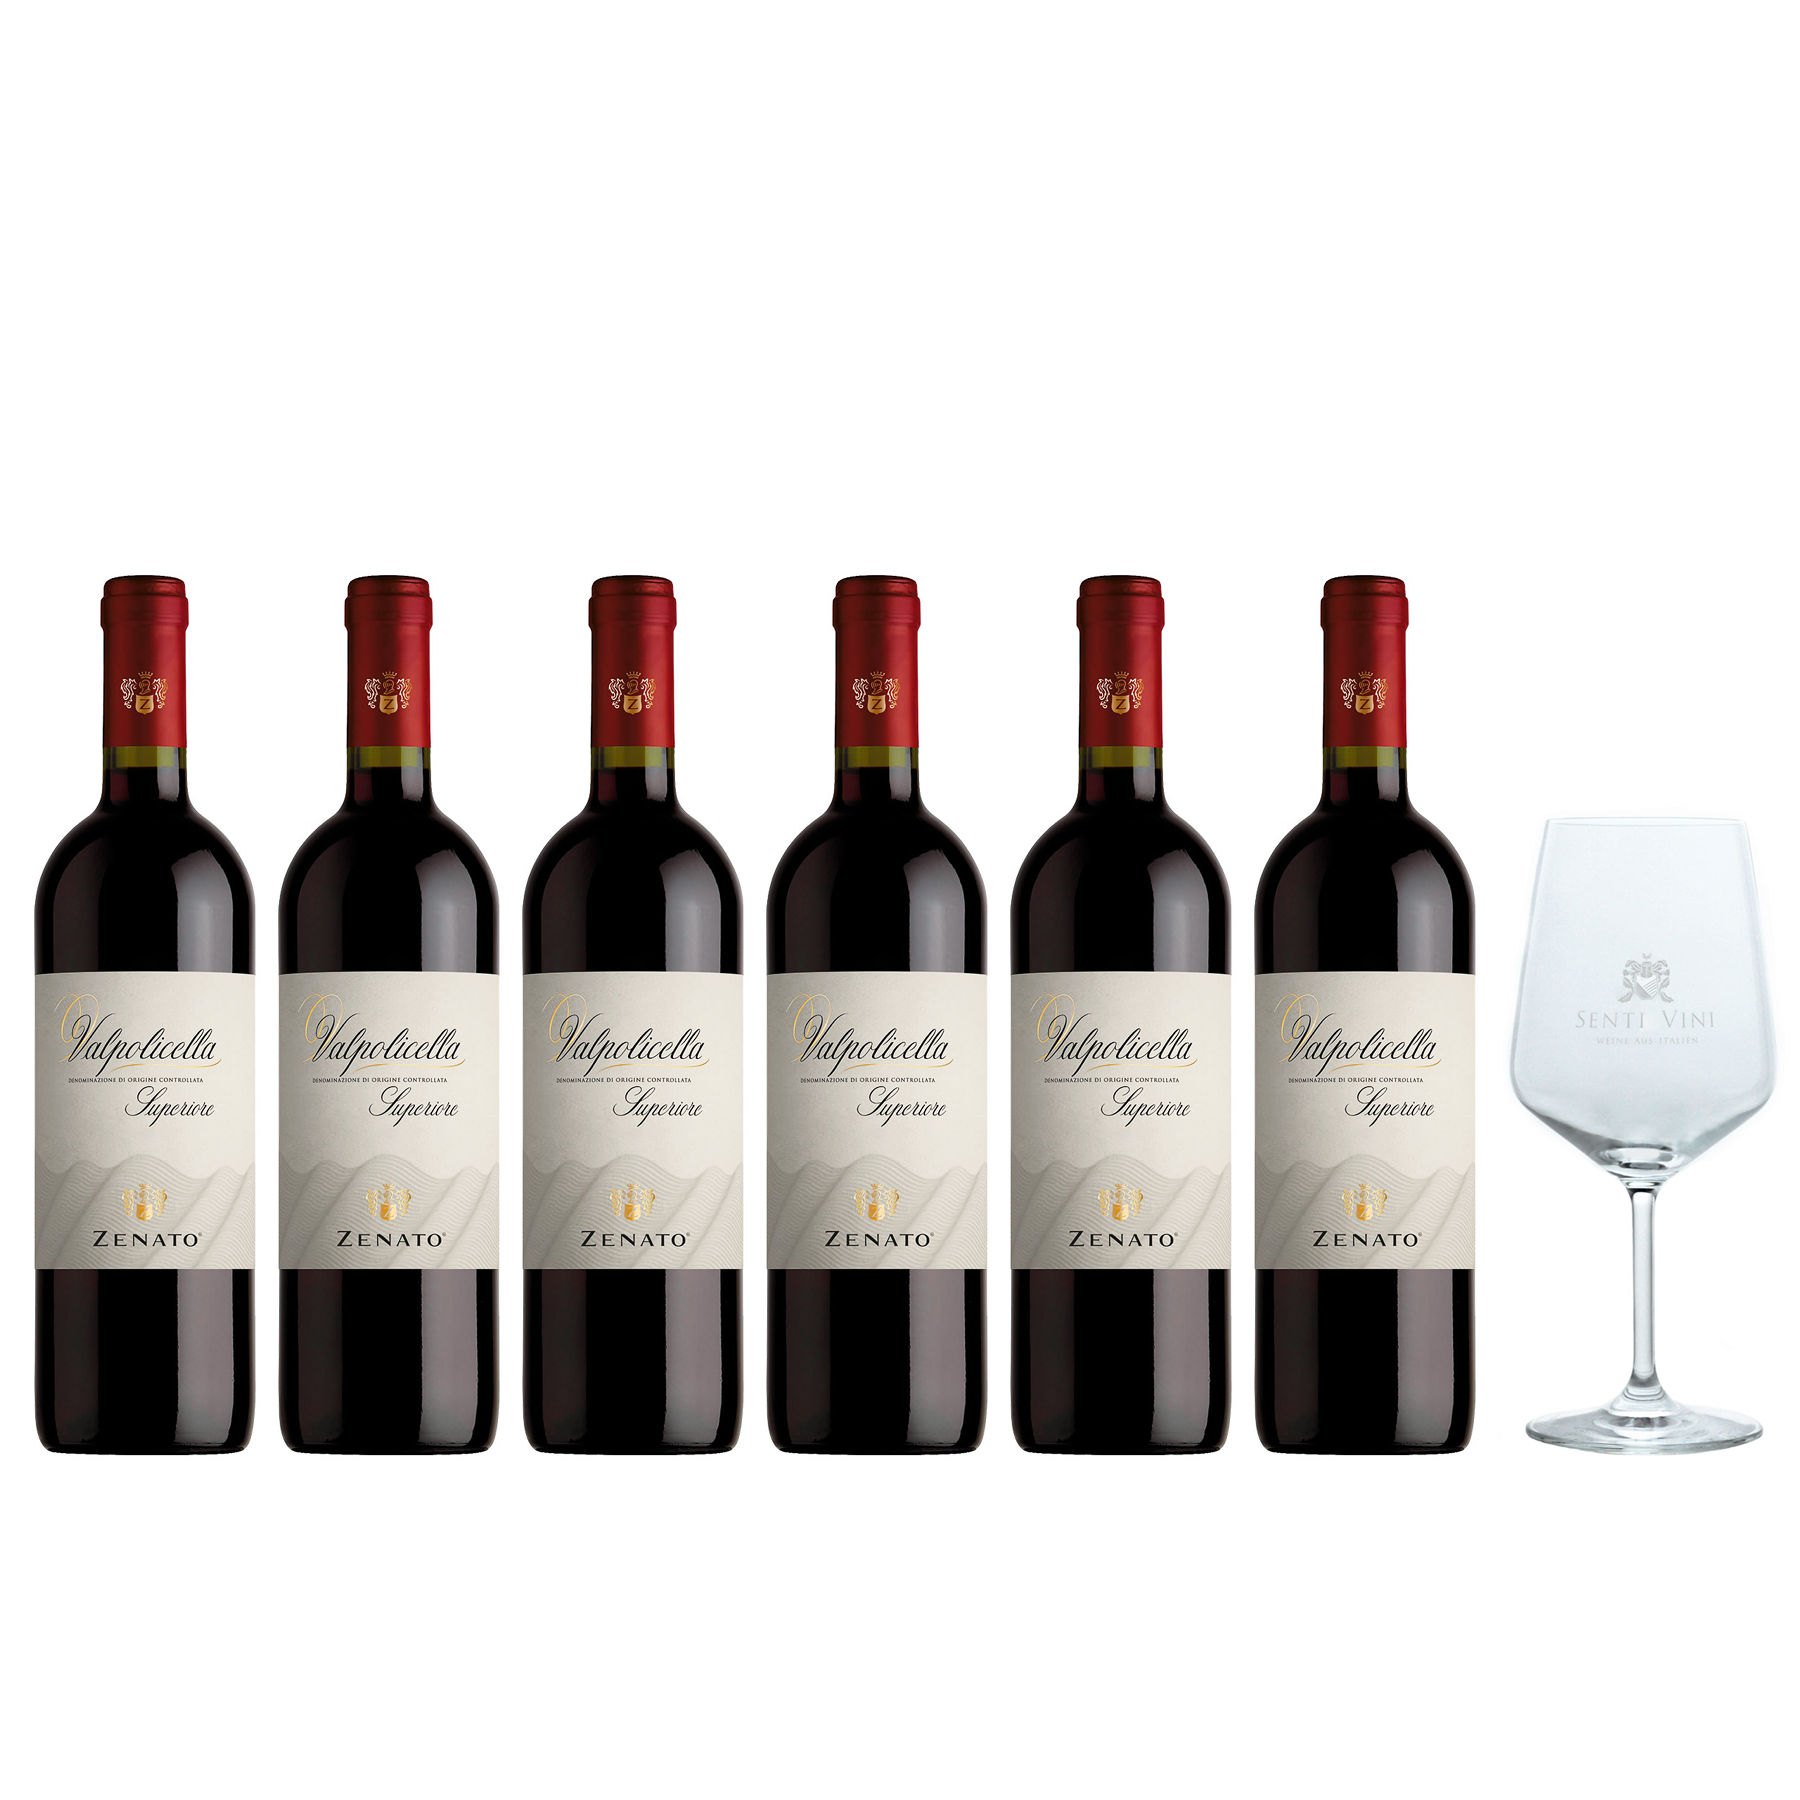 Sparpaket Zenato Valpolicella Superiore DOC 2020 (6 x 0,75l) mit Spiegelau  Senti Vini Weinglas | Online kaufen bei Senti Vini - Weine aus Italien